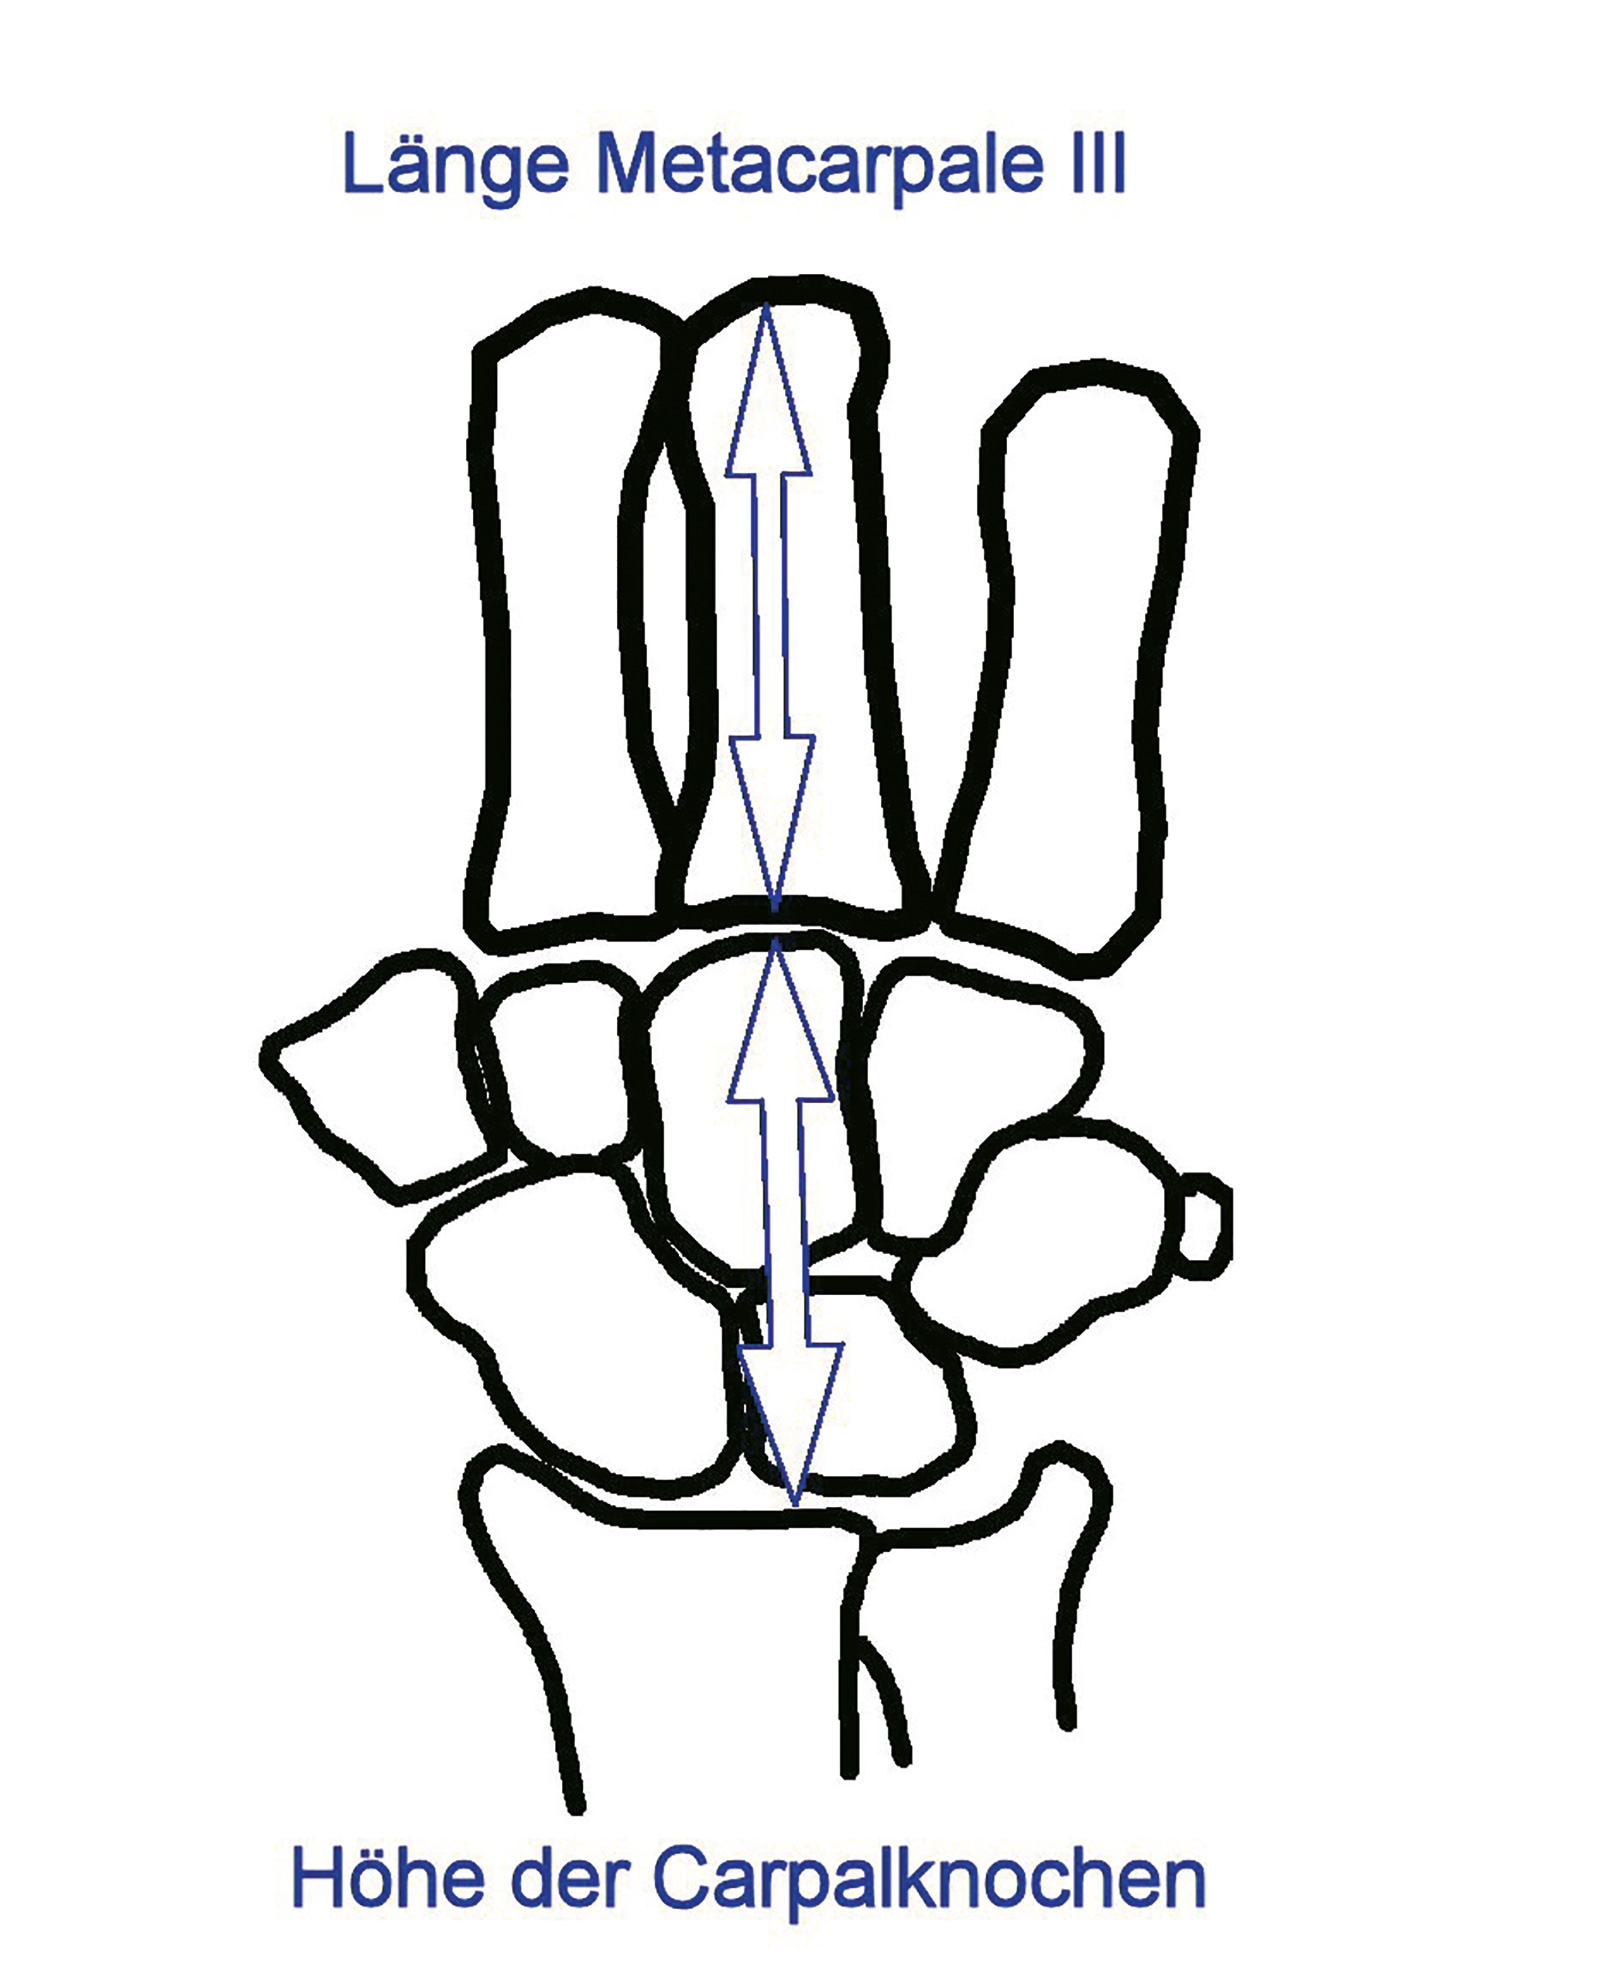 Abb. 7-32: Verhältnis der Höhe der Handwurzelknochen geteilt durch die Länge des Metacarpale III beträgt etwa 0.54 (Youm Y, Flatt AE. Kinematics of the Wrist. Clin Orthop 1980; 149: 21-32)